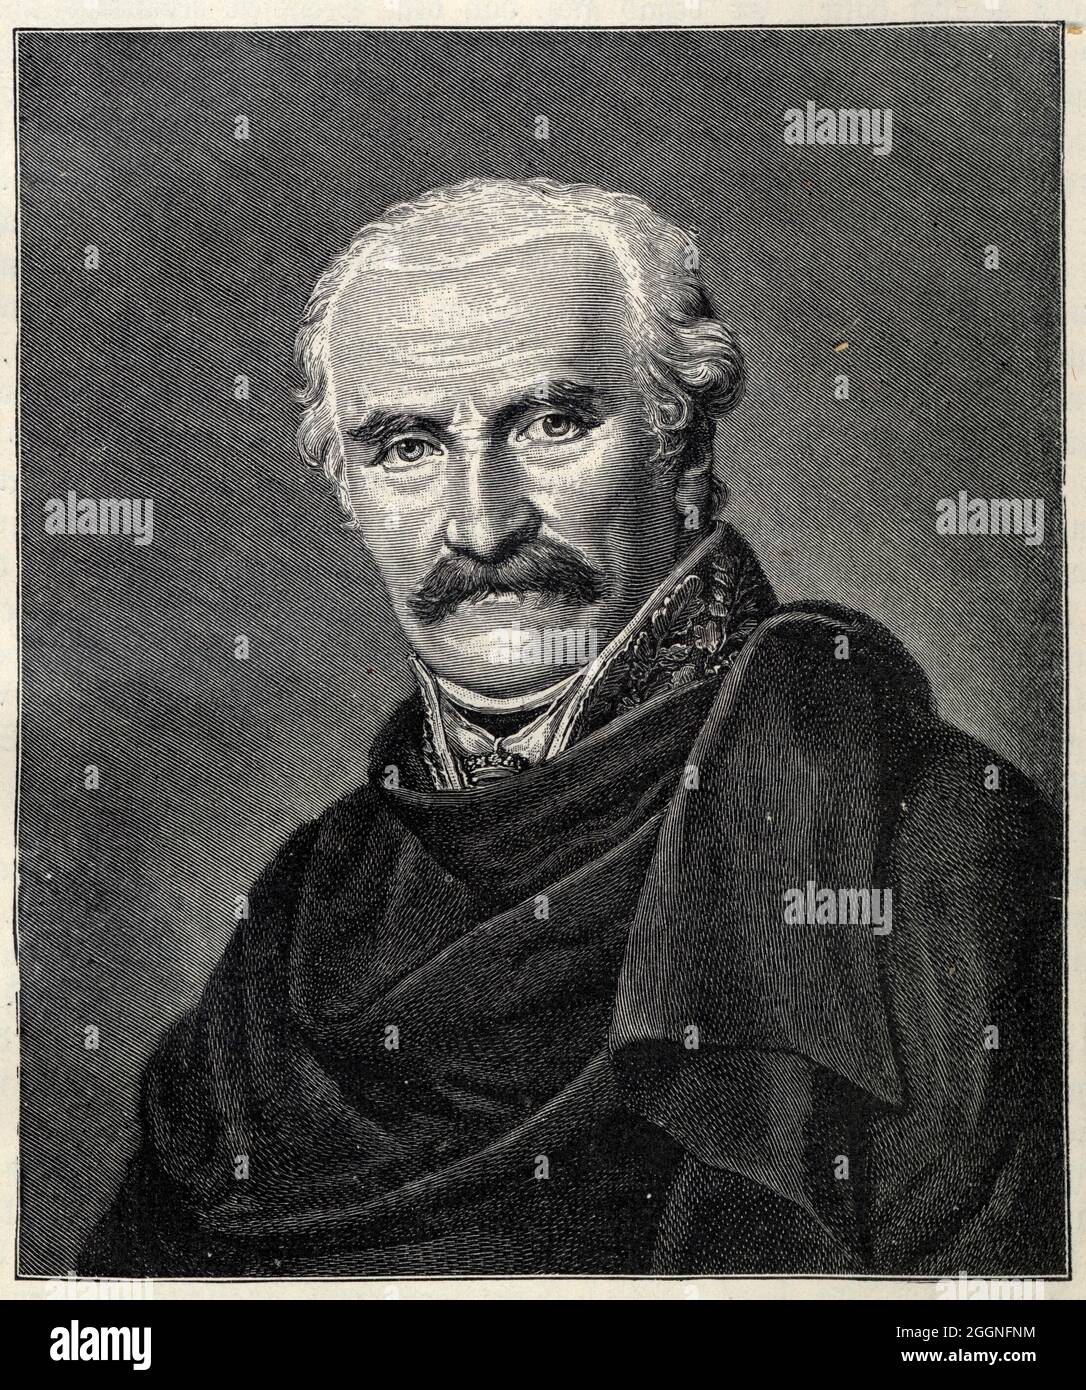 Portrait of Gebhard Leberecht von Blücher, Prince of Wahlstatt (1742-1819). Museum: PRIVATE COLLECTION. Author: FRIEDRICH CARL GRÖGER. Stock Photo